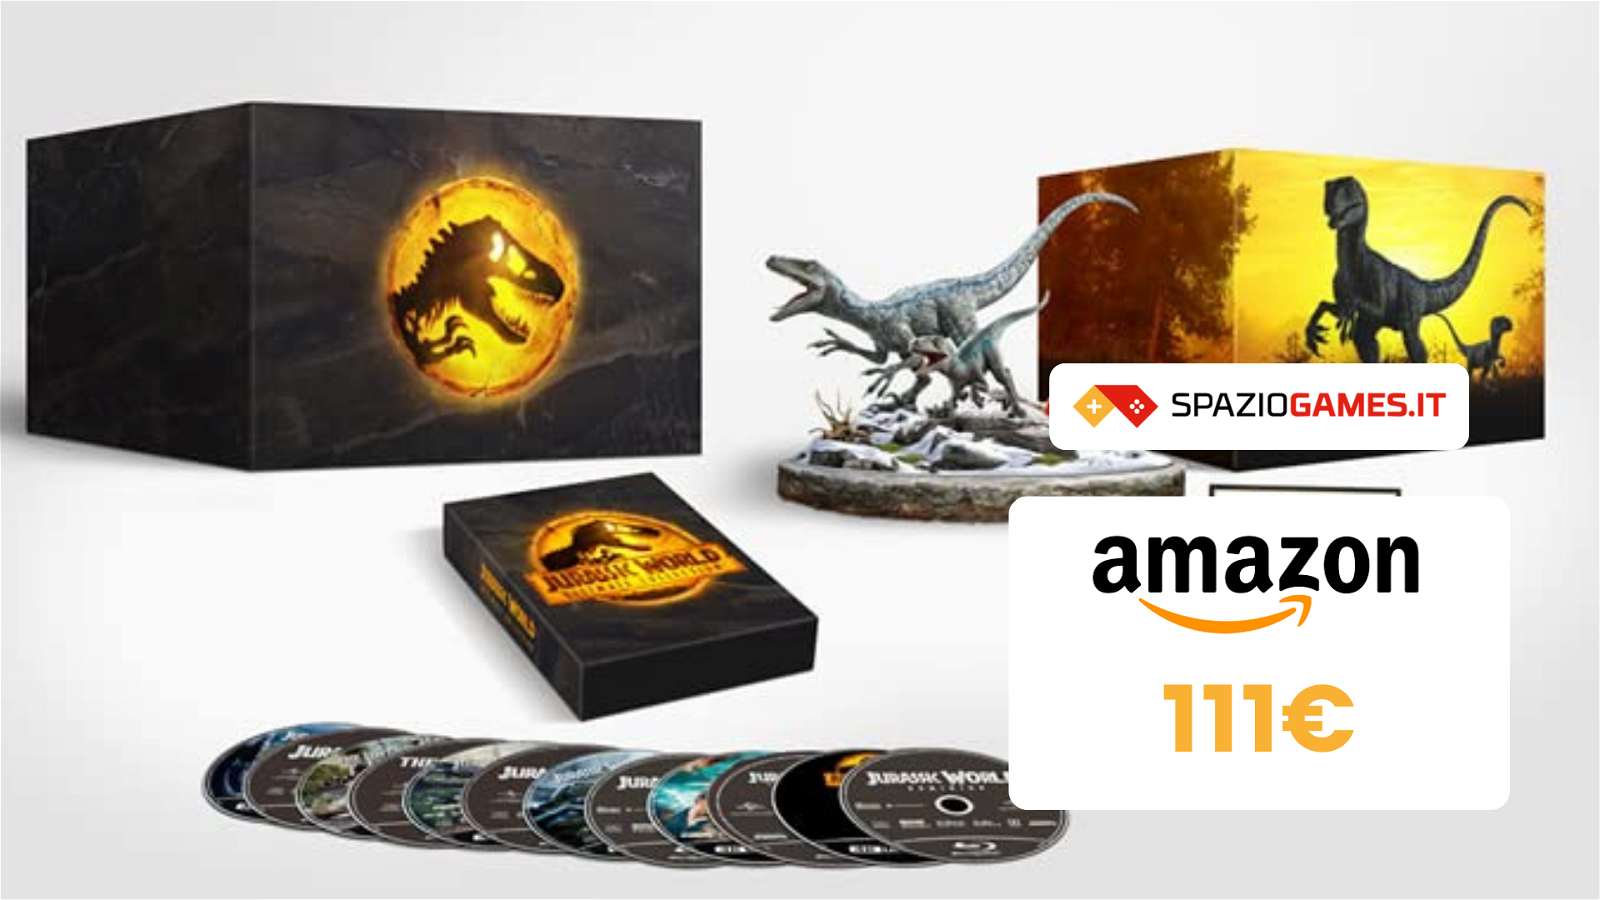 La Jurassic World Collection in 4K oggi costa SOLO 111€!